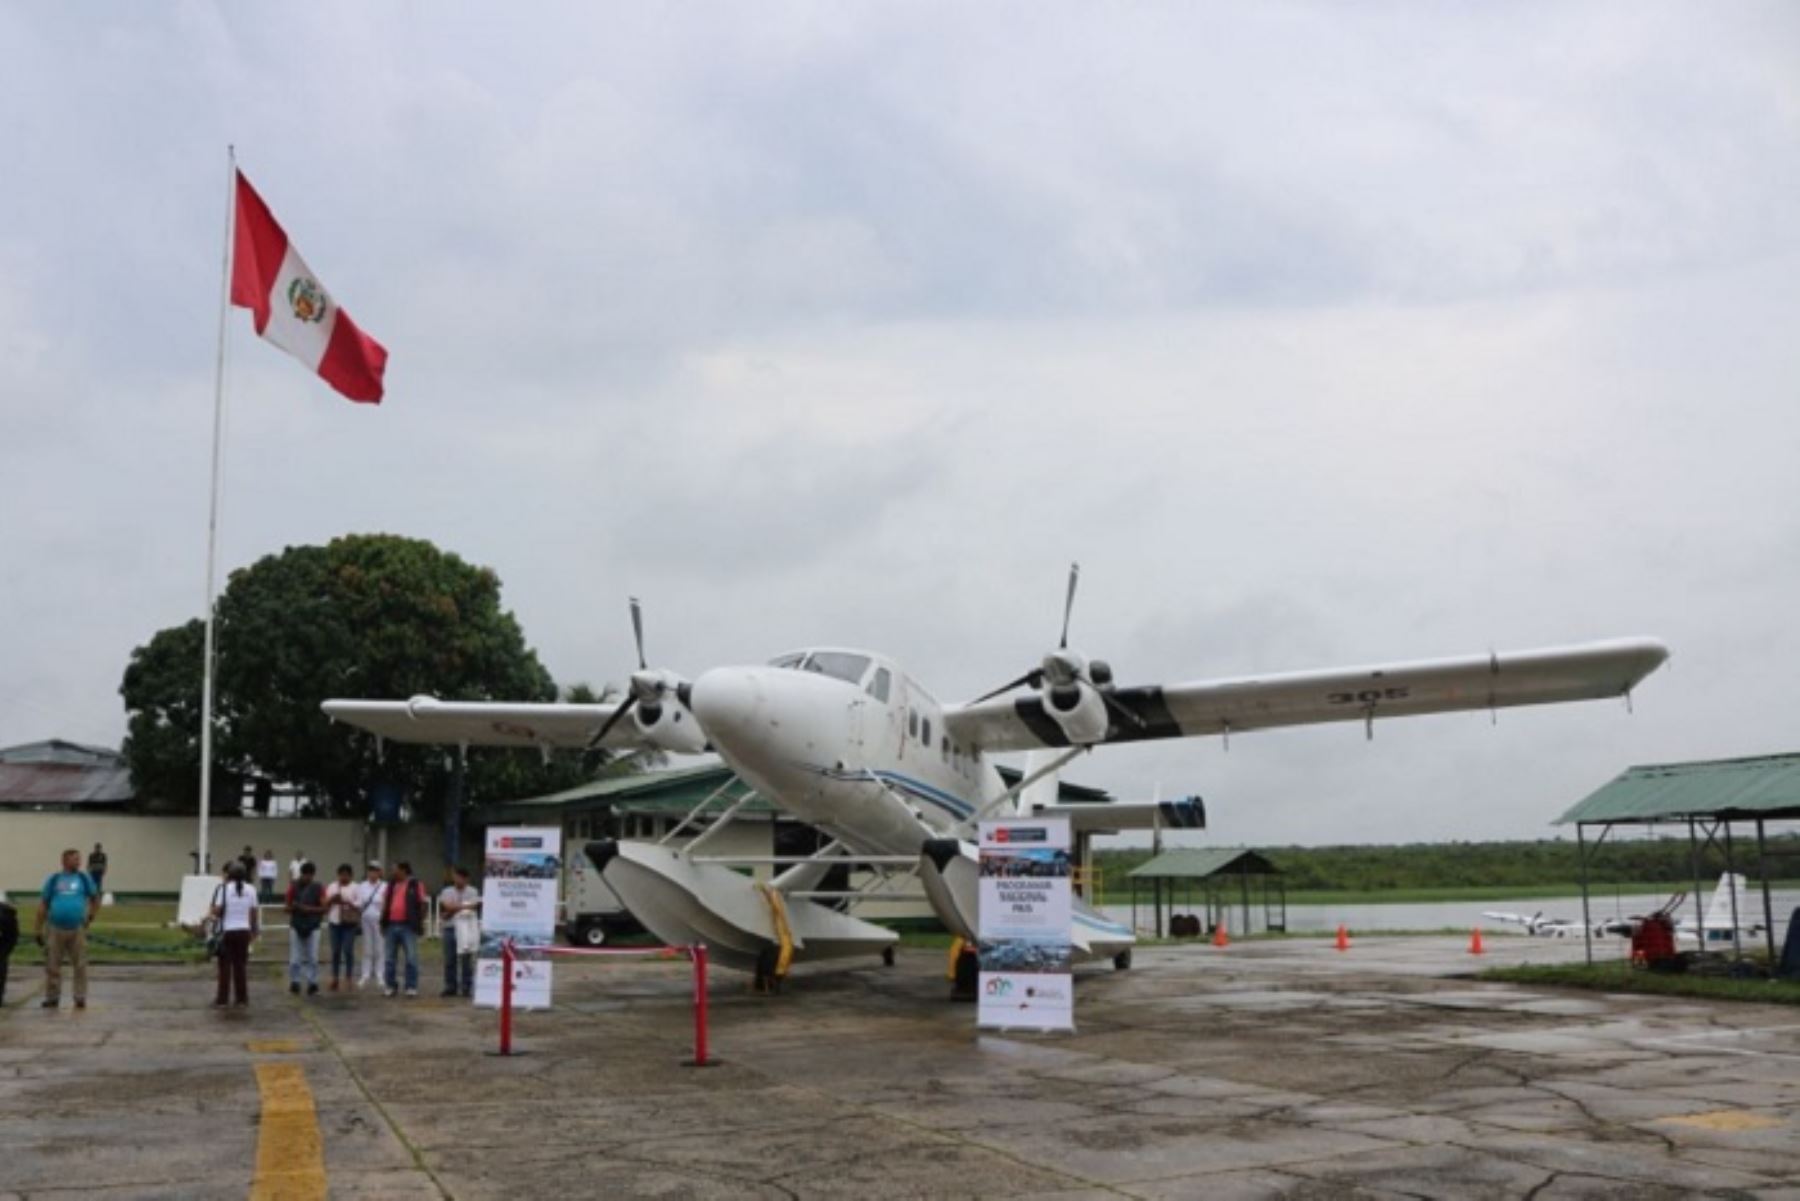 Fuerza Aérea del Perú mediante un convenio suscrito con el Midis ha puesto a disposición 12 aeronaves Twin Otter para ser utilizada a lo largo de la región Loreto,